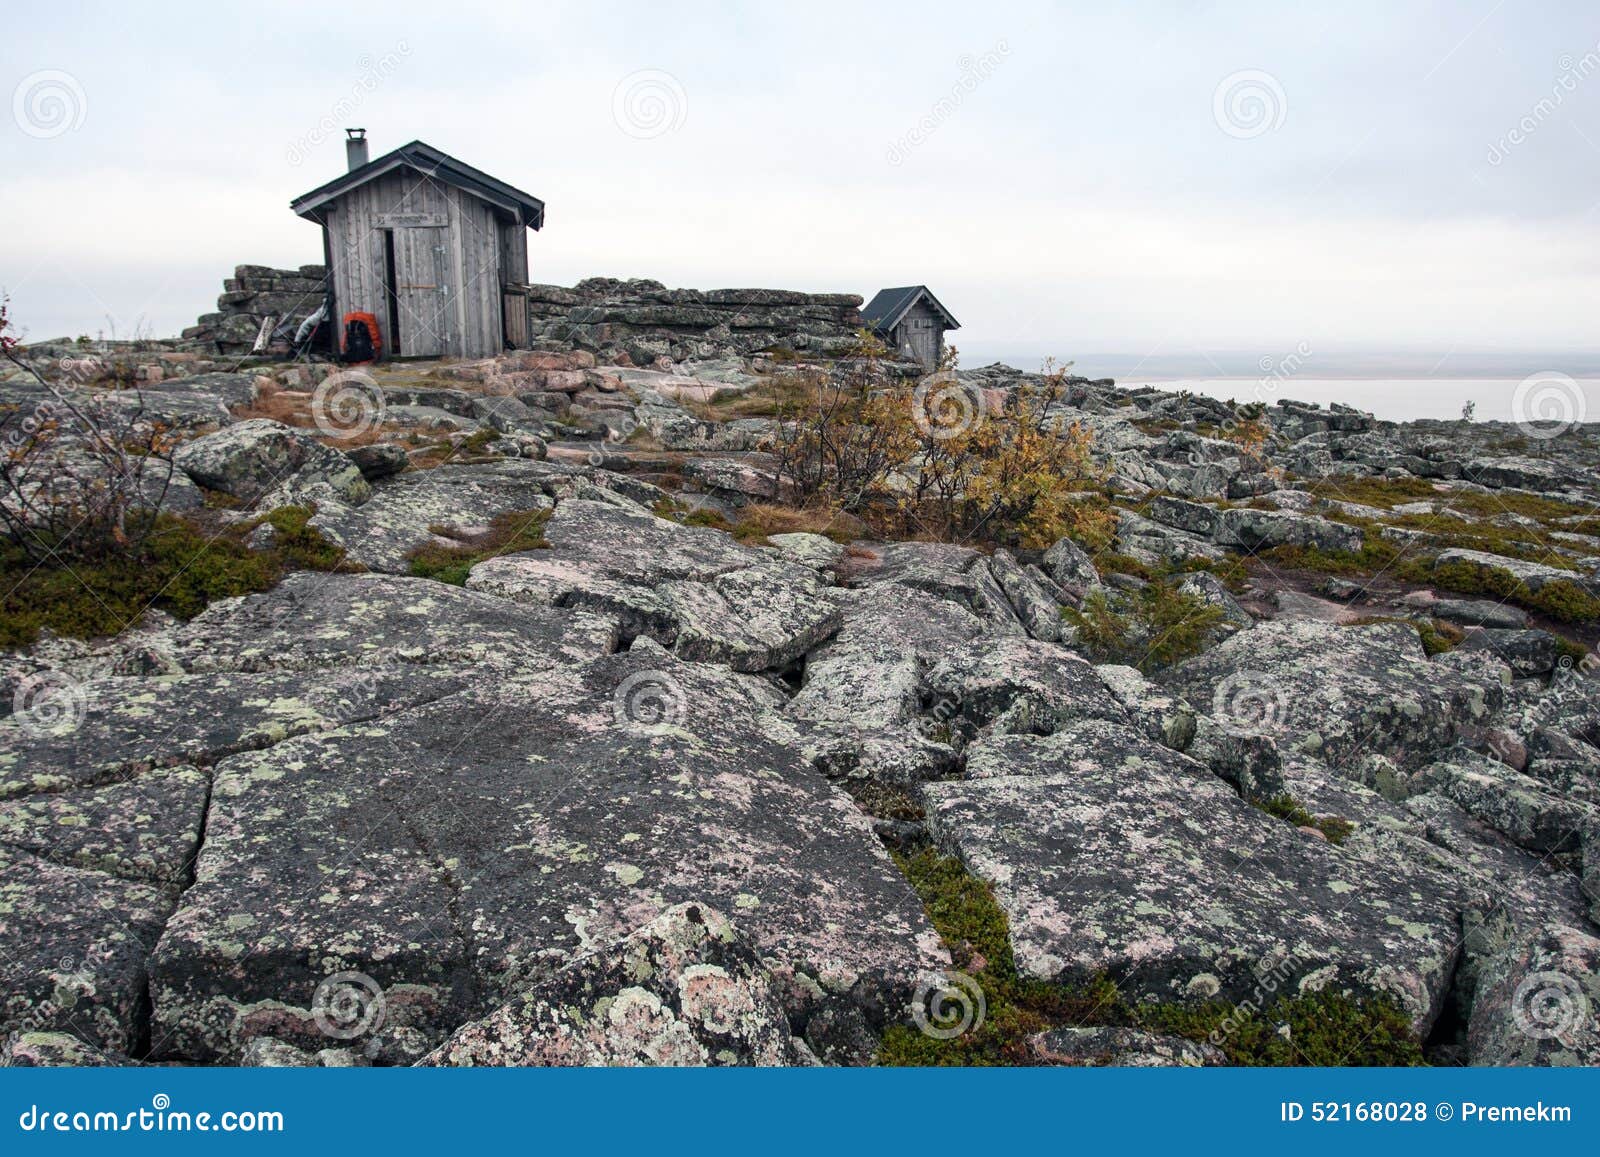 emergency hut in tundra in urho kekkonen national park